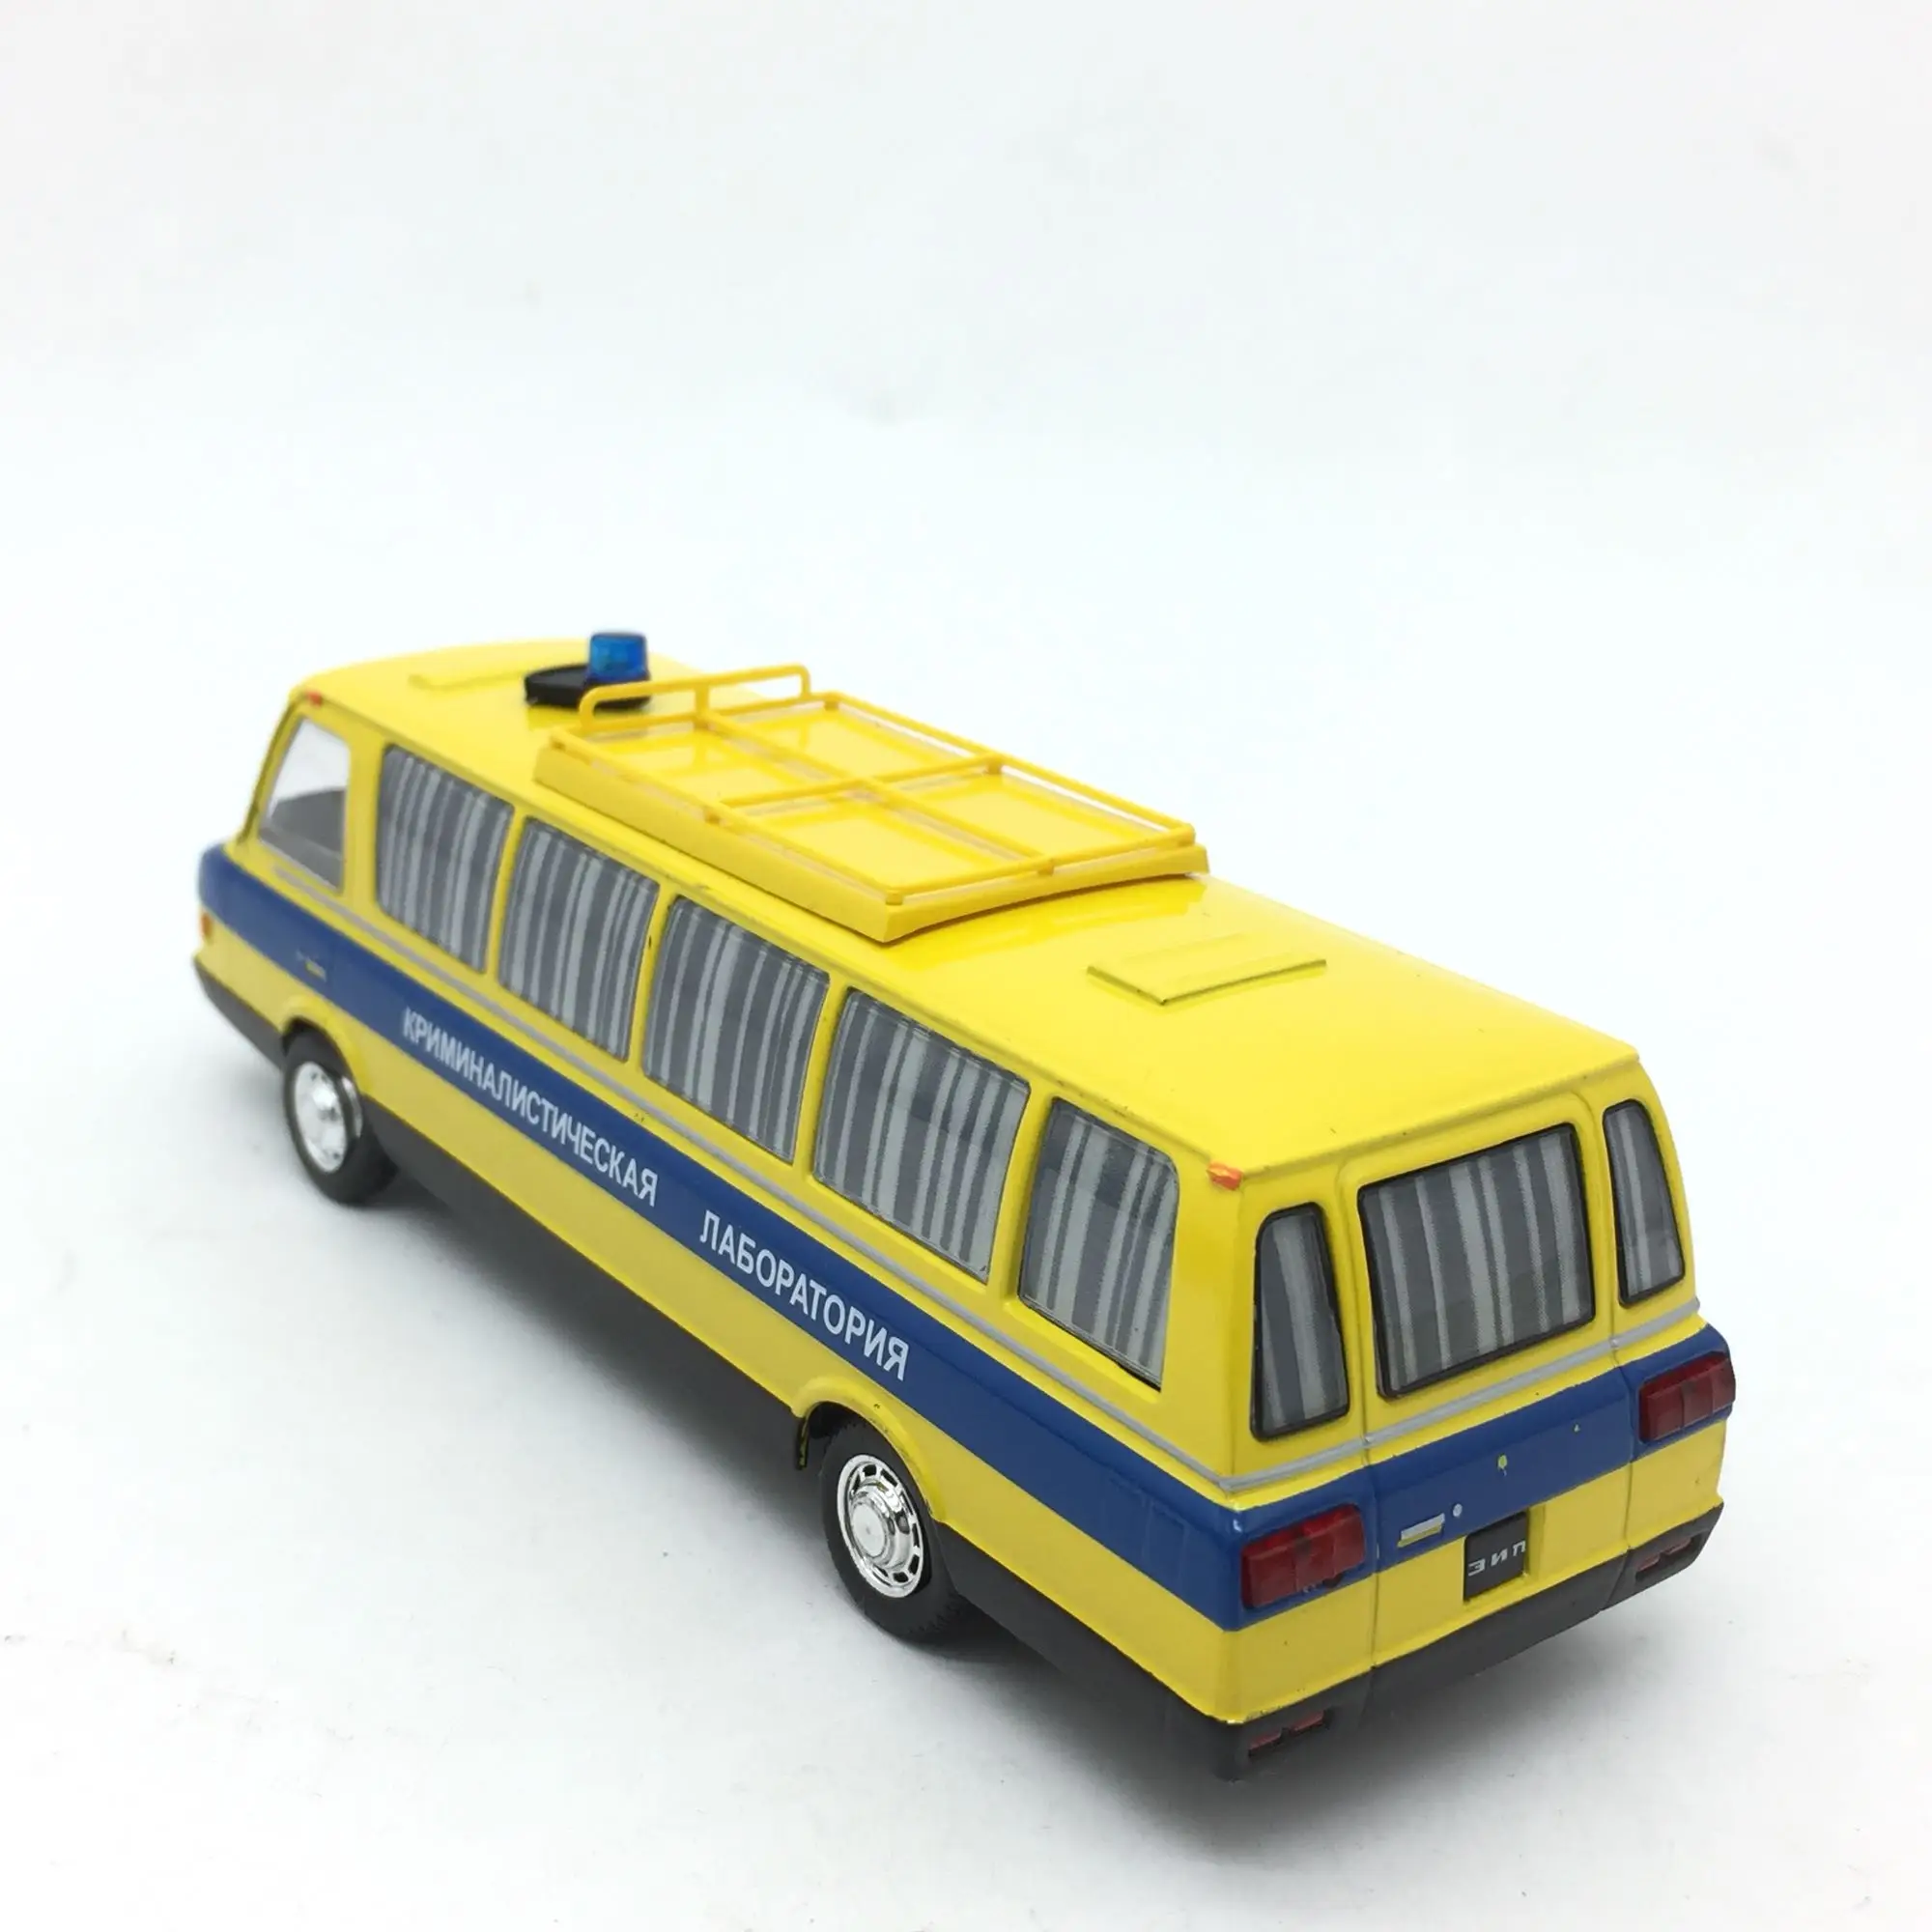 1:43 Восточно-Европейский совет литой автобус литой автомобиль Длина модели 16 см